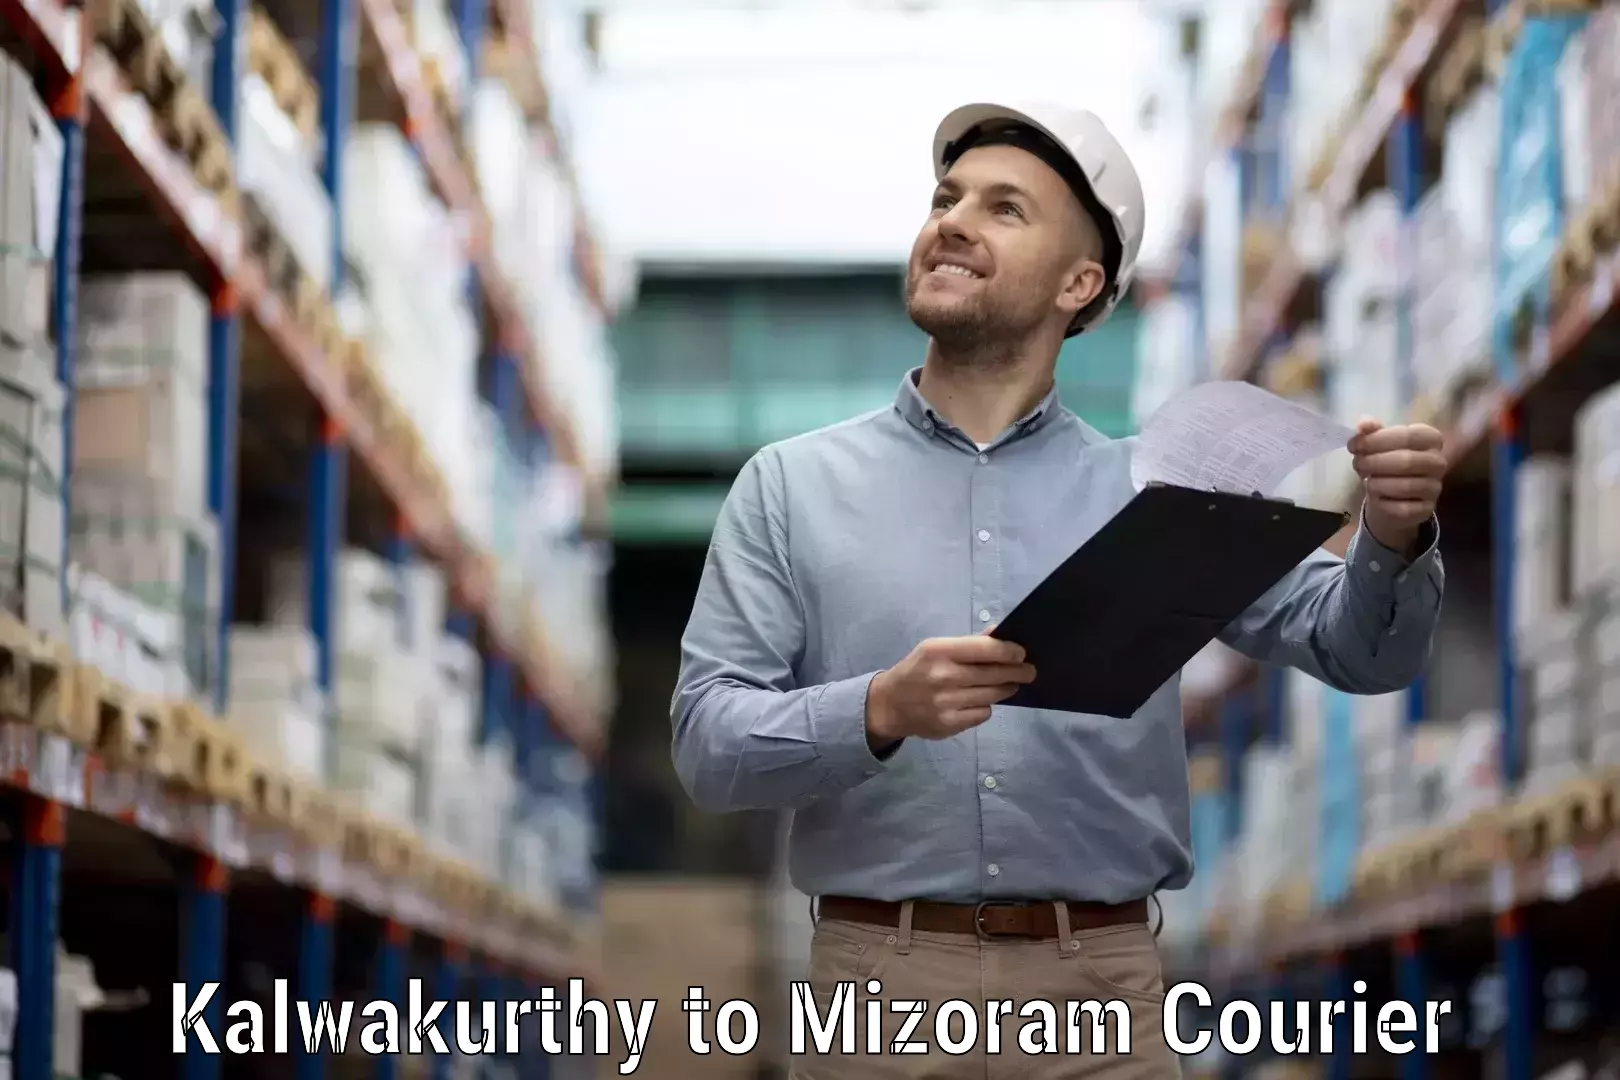 Customer-focused courier Kalwakurthy to Mizoram